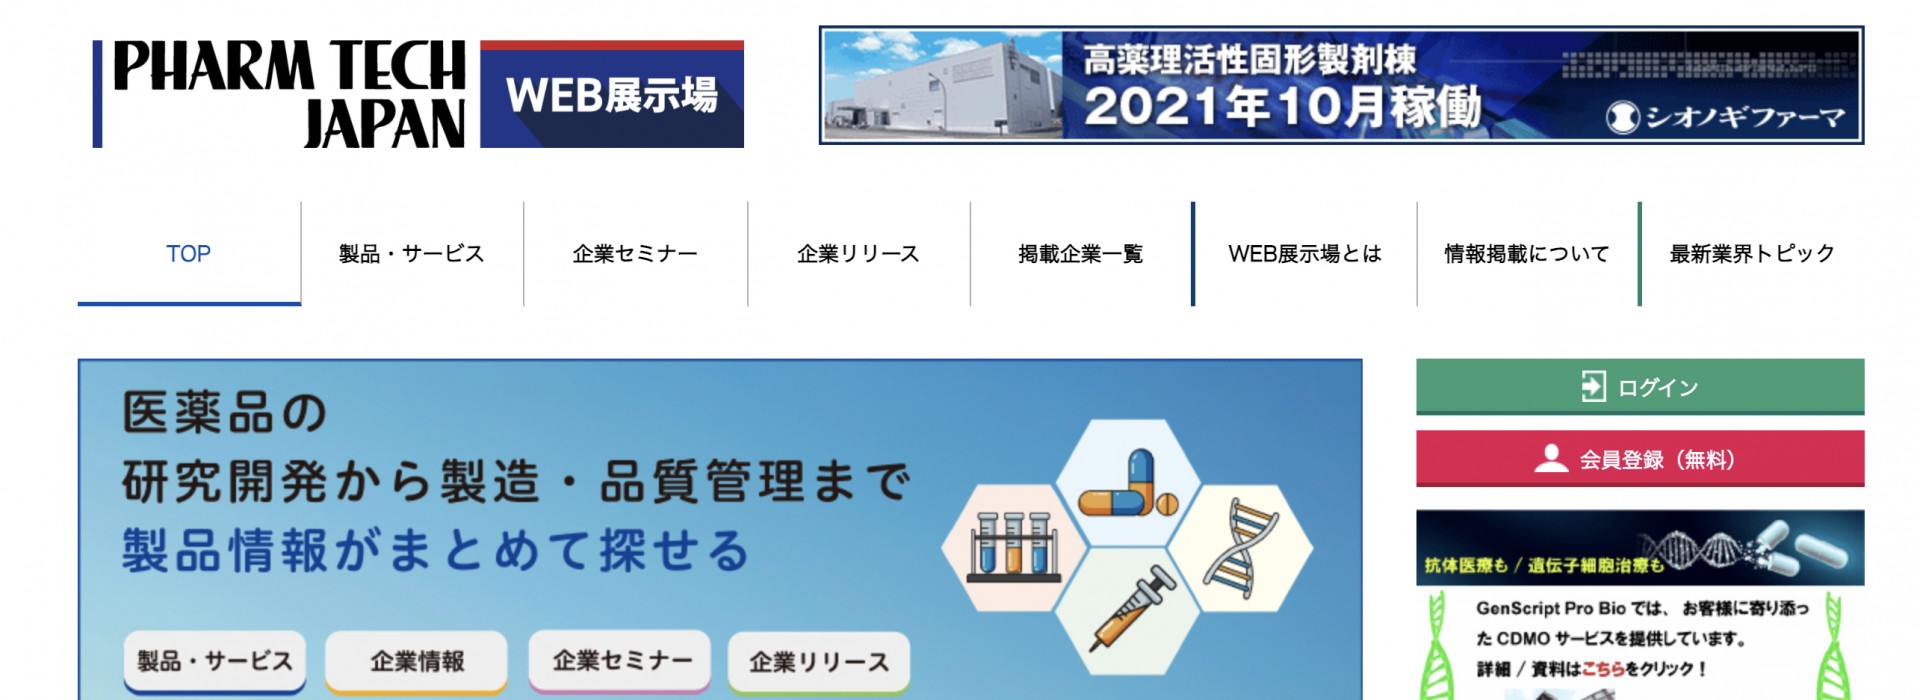 Dara Pharma, presente en la nueva edición de la revista Pharma Tech Japan